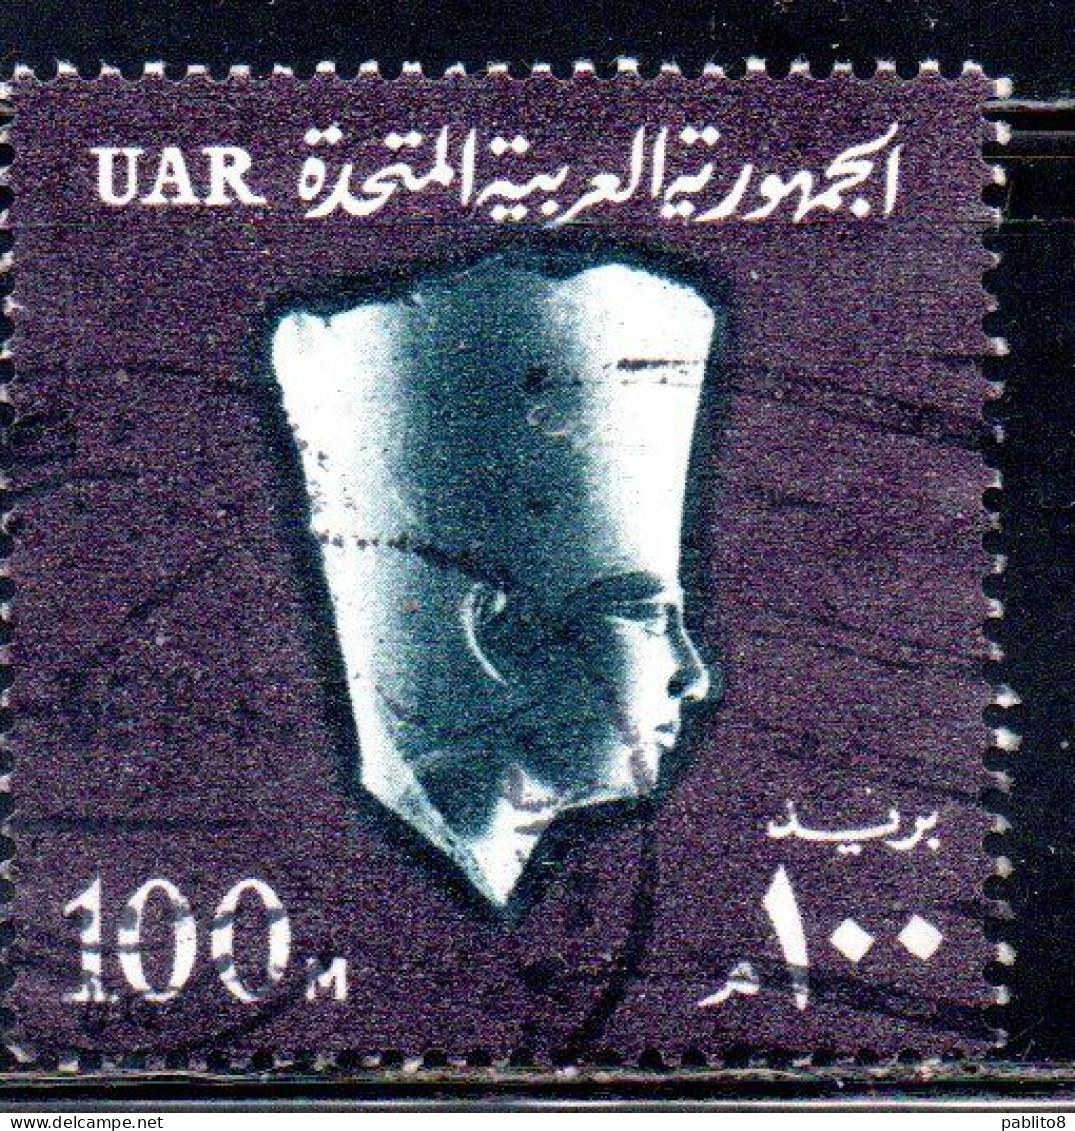 UAR EGYPT EGITTO 1964 1967 PHARAOH USERKAF 5th DYNASTY 100m USED USATO OBLITERE' - Gebraucht